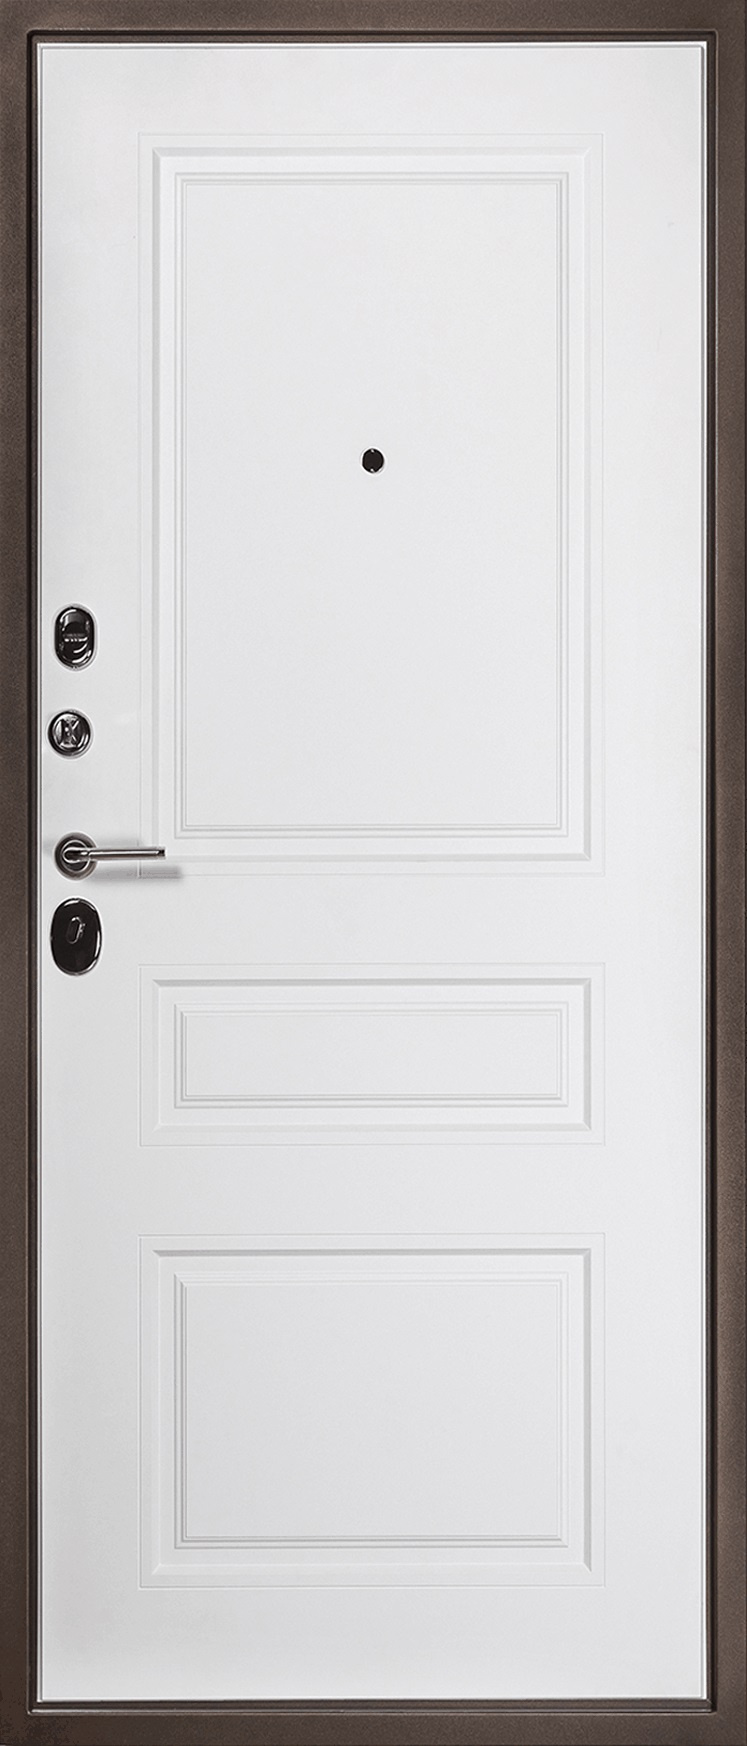 Карда Входная дверь Termo Premium 02, арт. 0007030 - фото №1